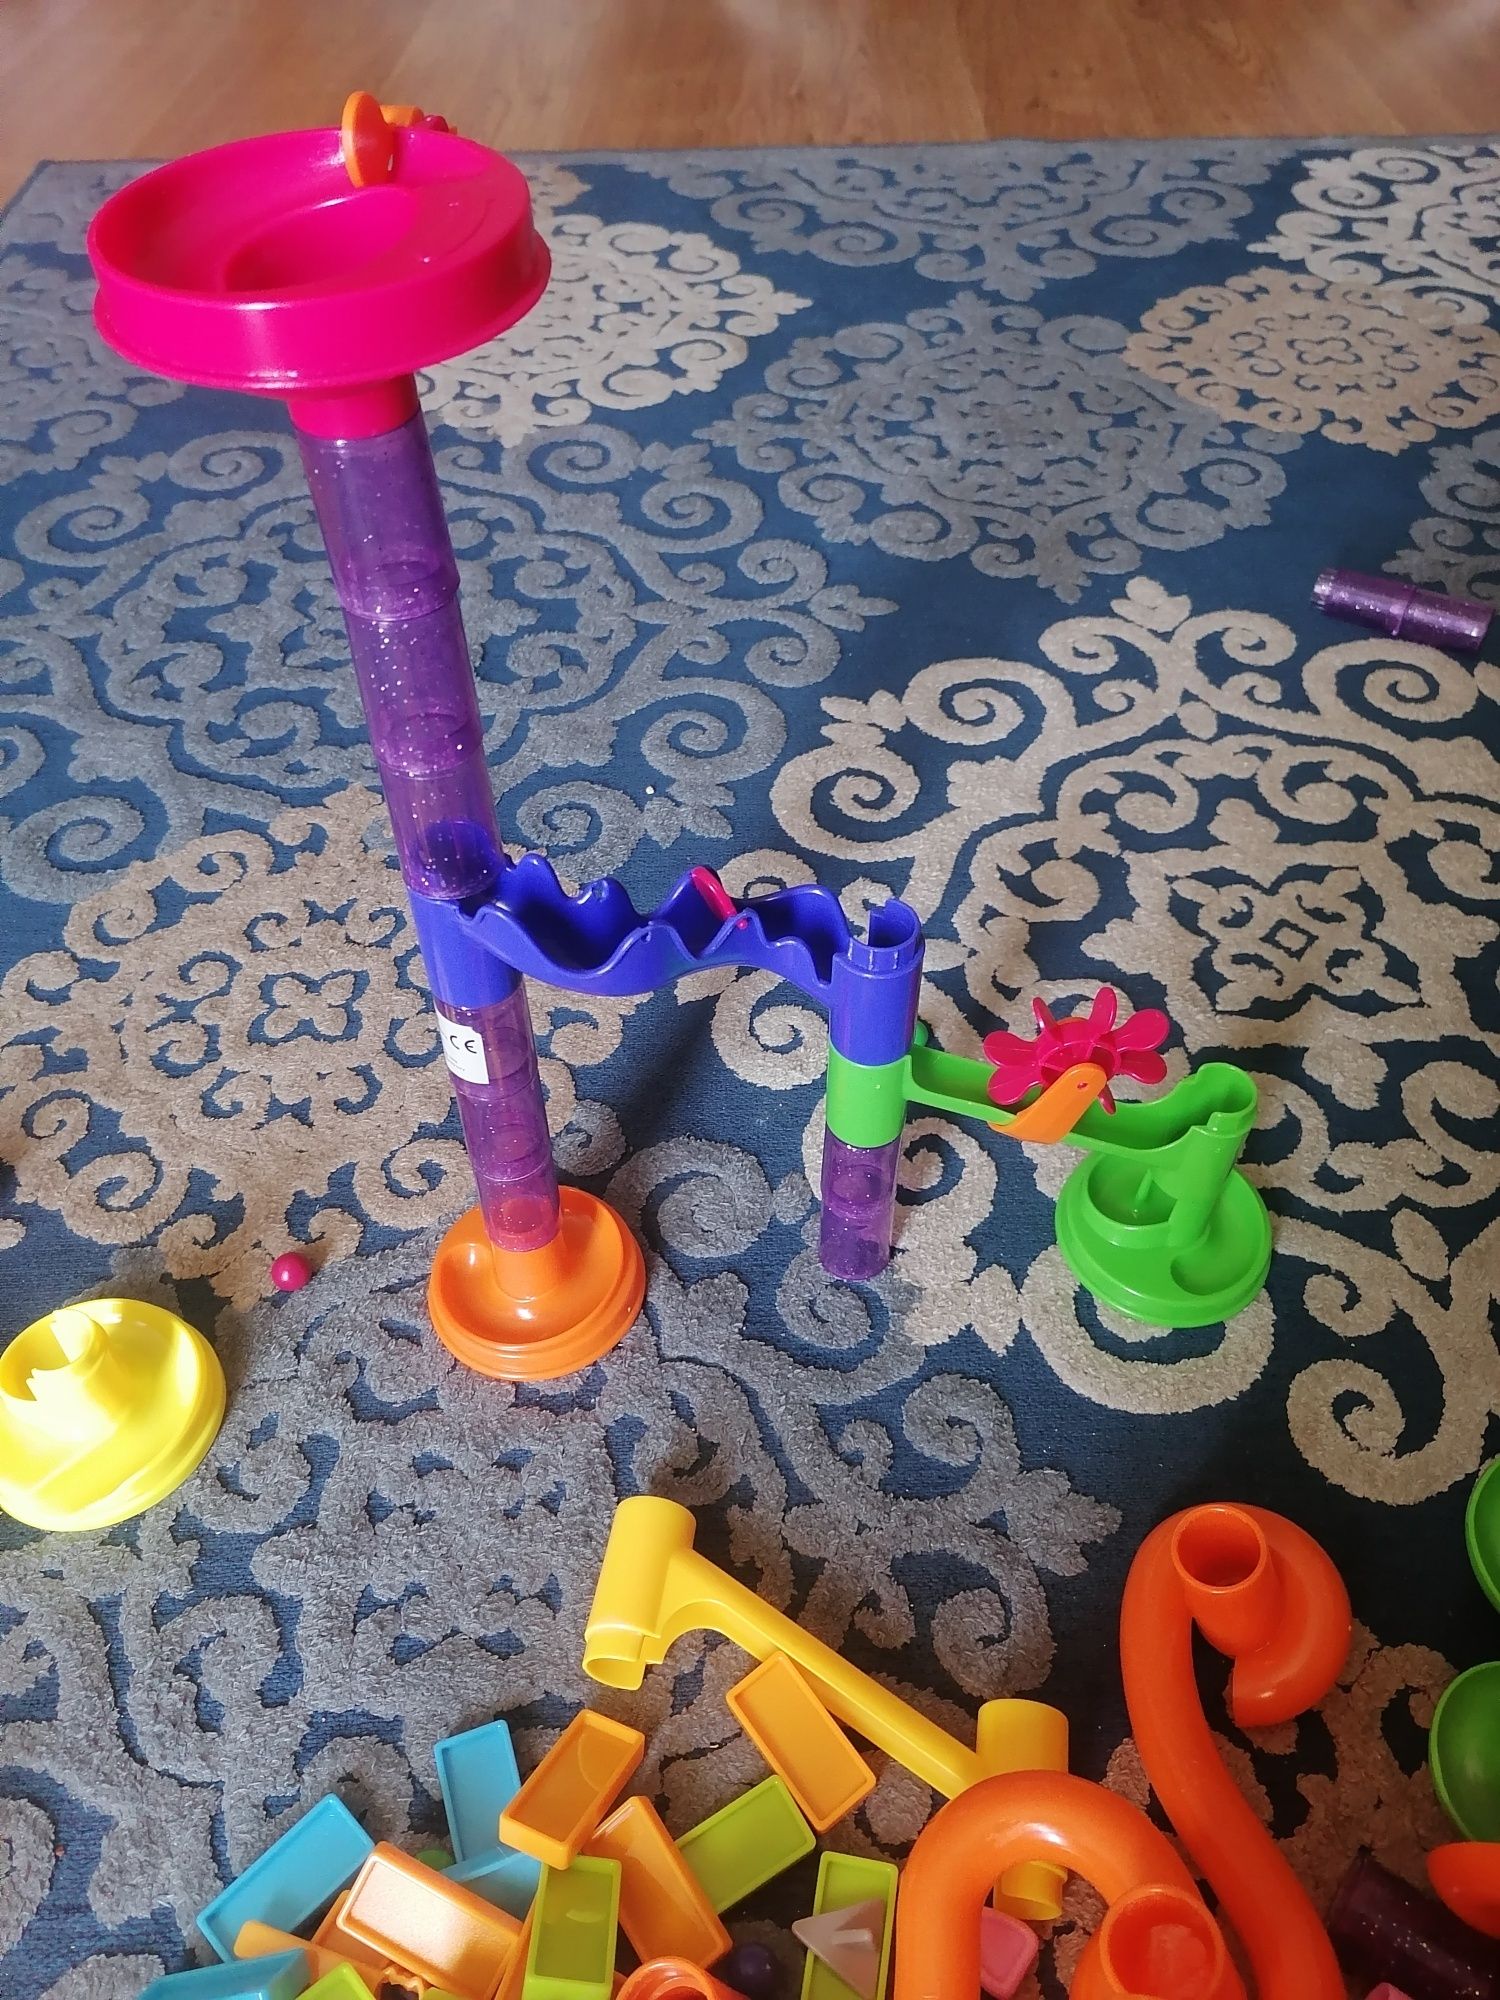 Brinquedo com peças de encaixar